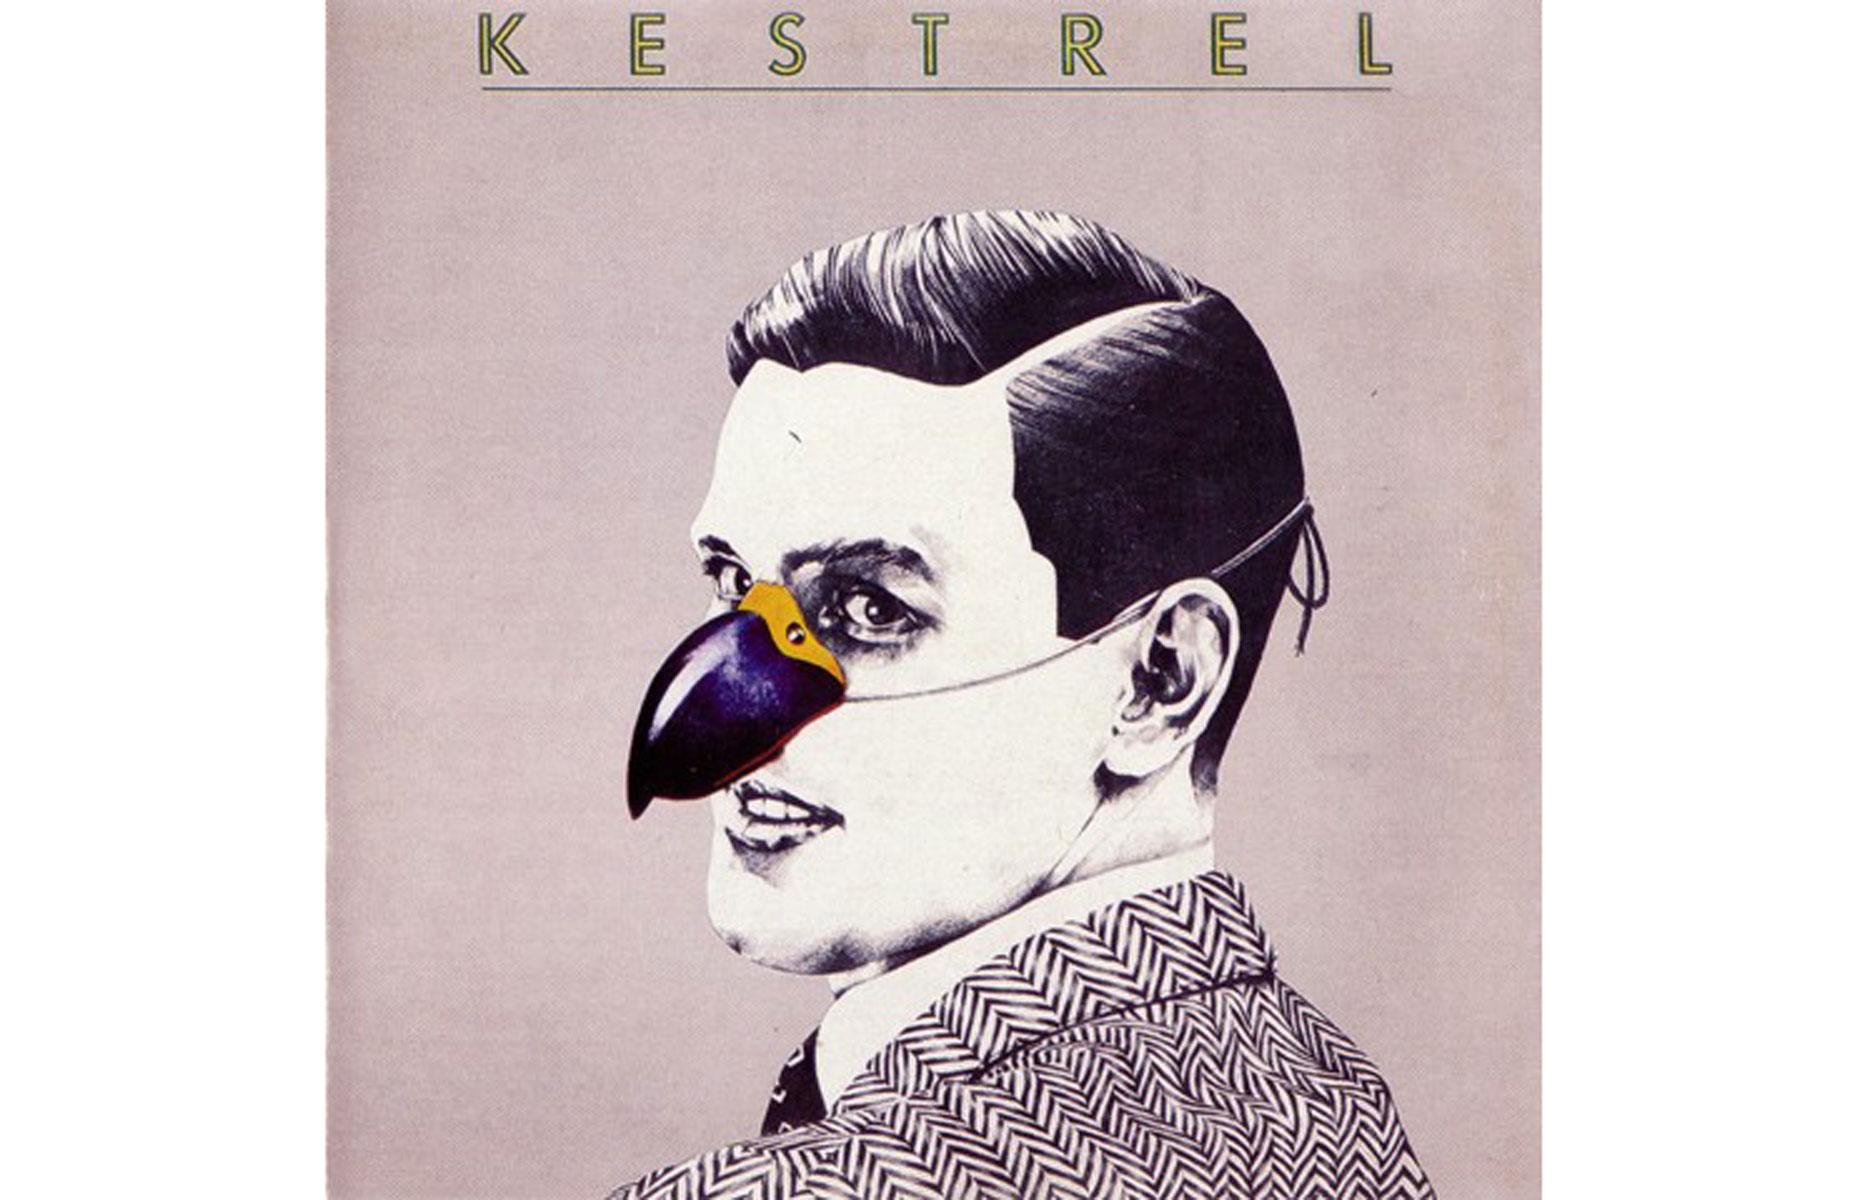 Kestrel – Kestrel: up to £1,500